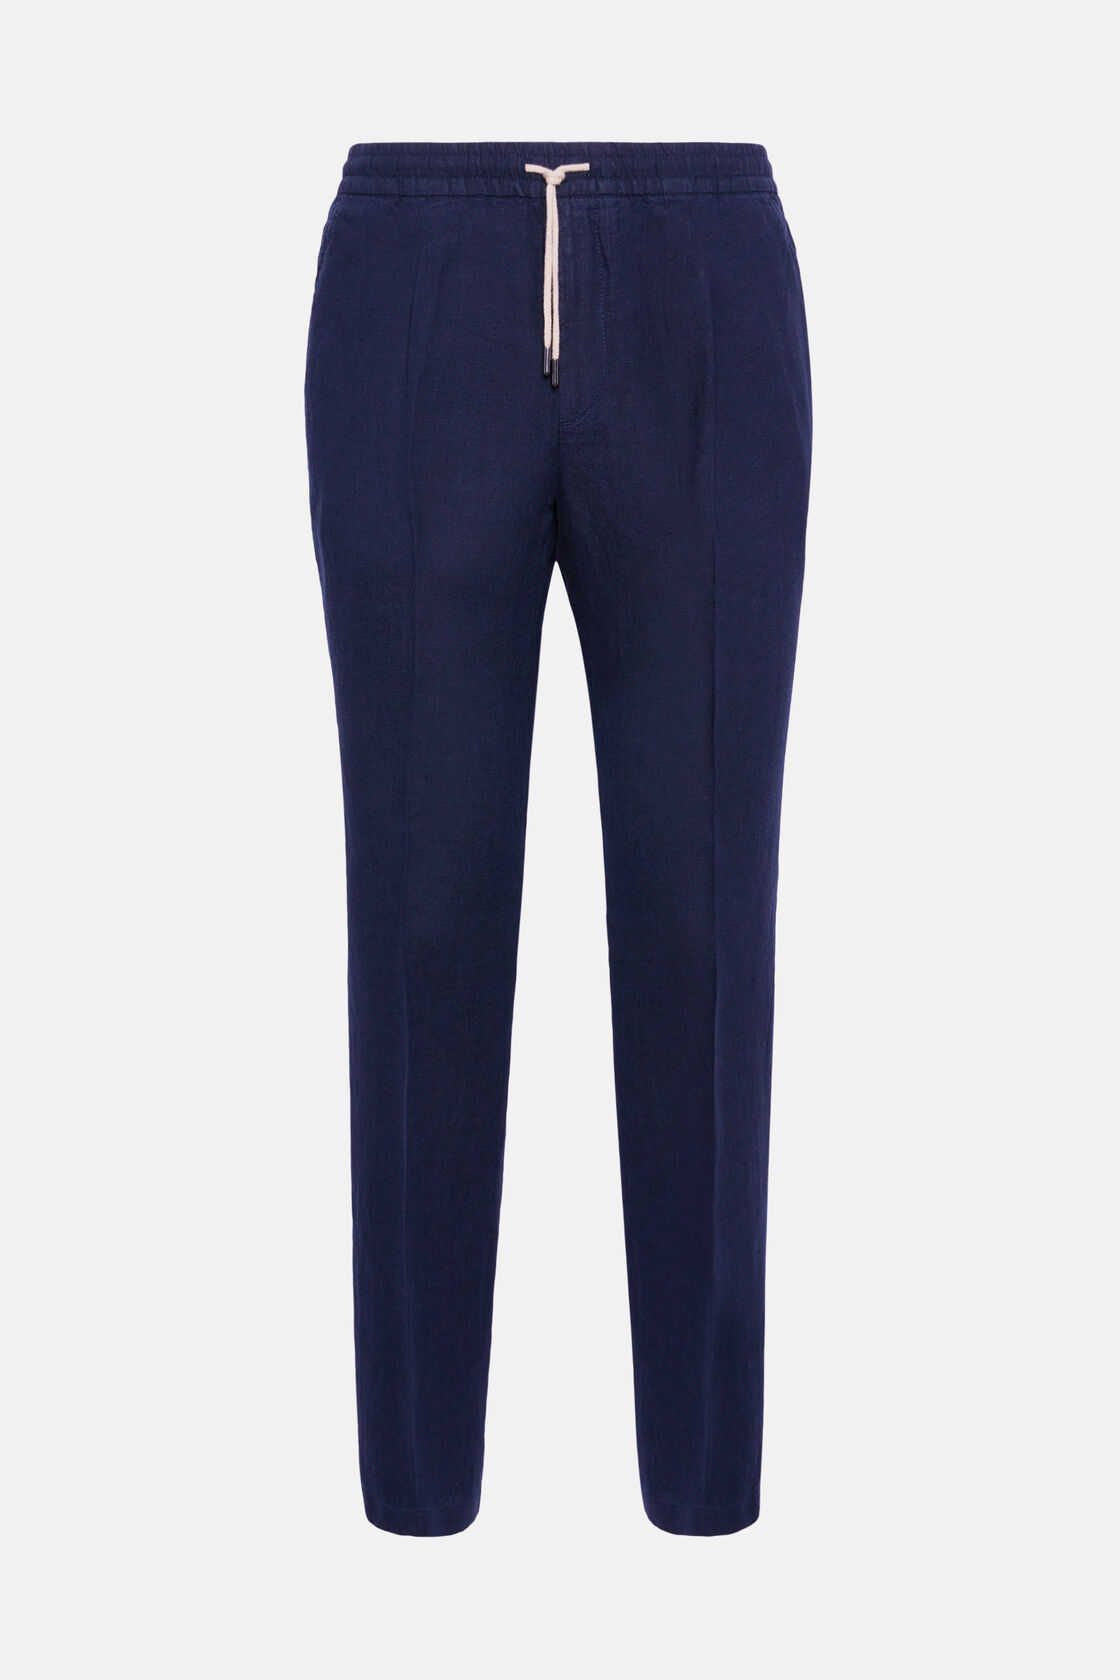 City Linen Trousers, Navy blue, hi-res